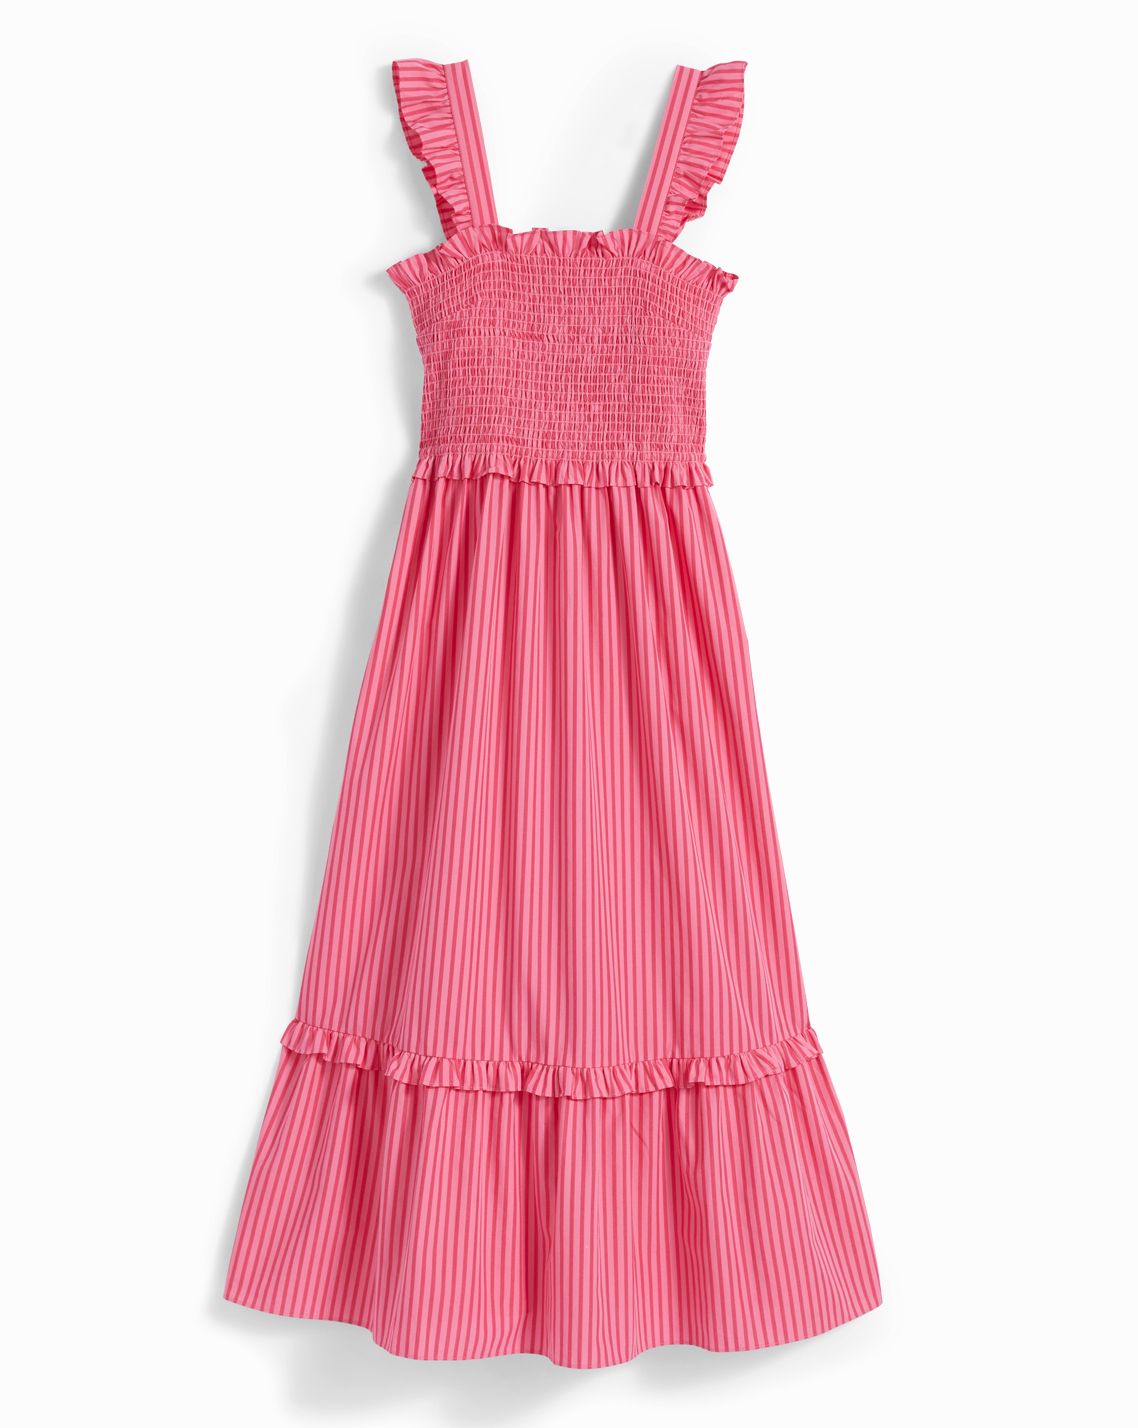 Kimberly Smocked Midi Dress in Pink Stripe – Draper James